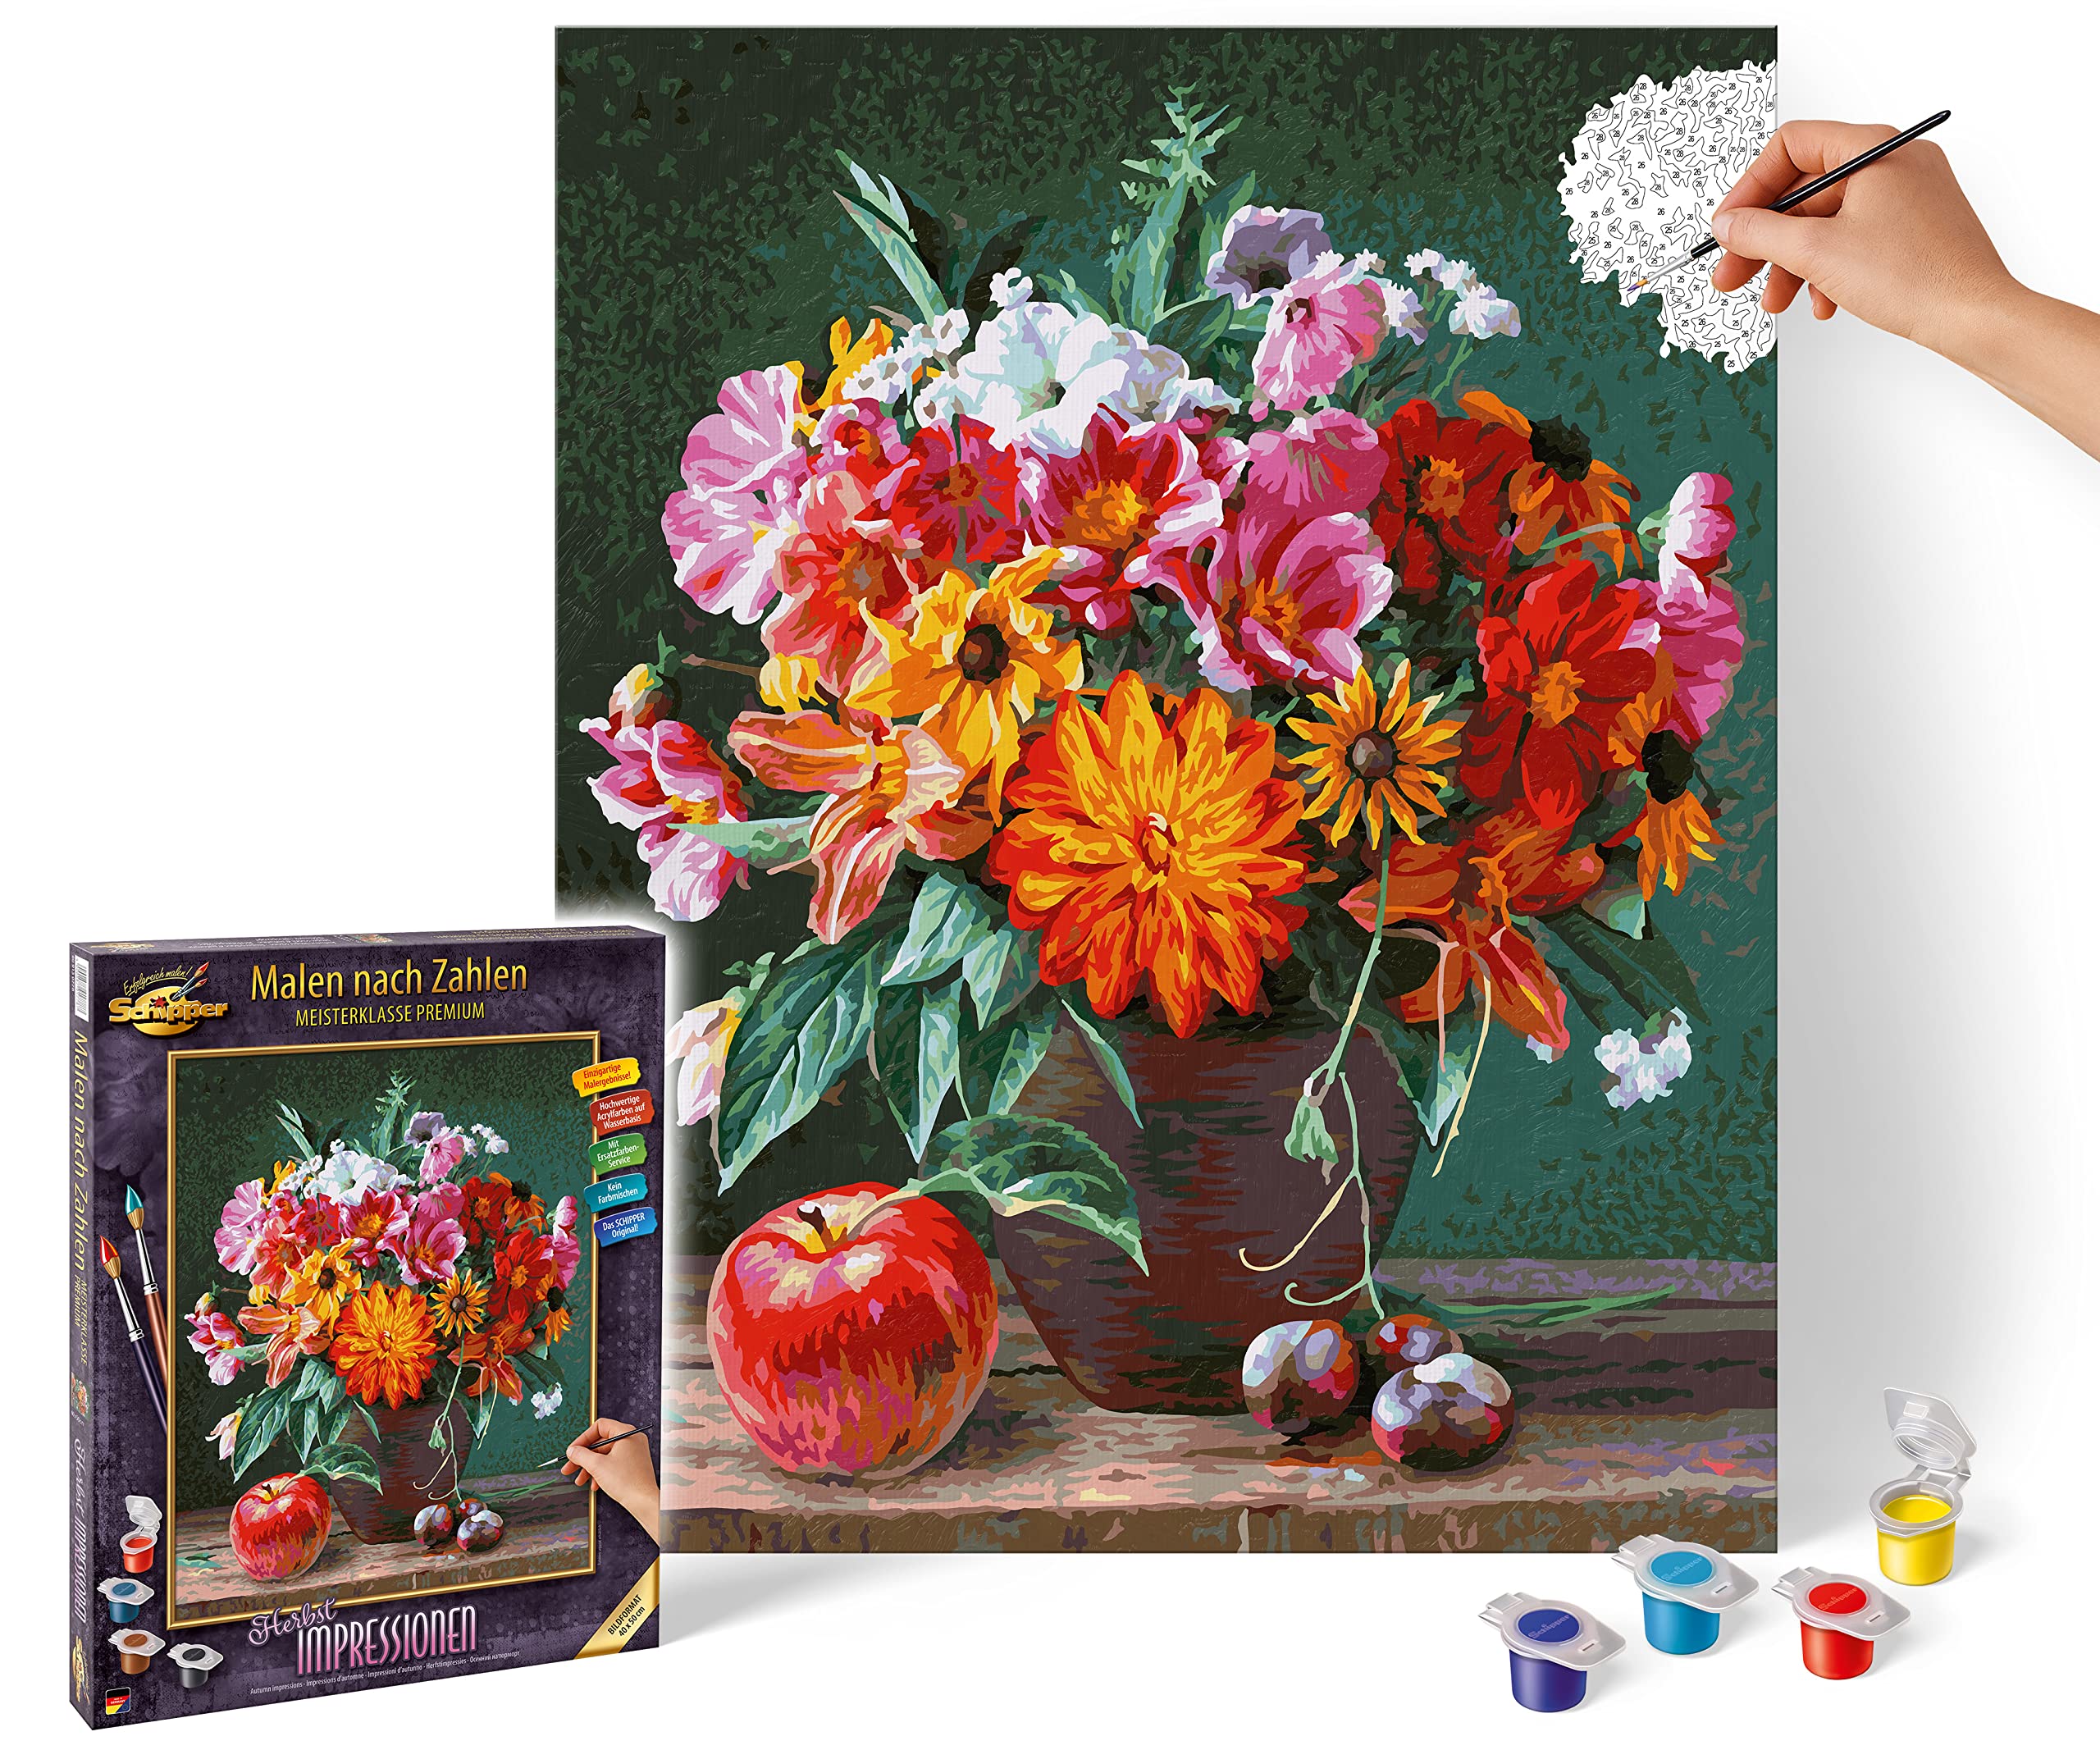 Schipper 609130778 Malen nach Zahlen - Herbstimpressionen - Bilder malen für Erwachsene, inklusive Pinsel und Acrylfarben, 40 x 50 cm, Mehrfarbig